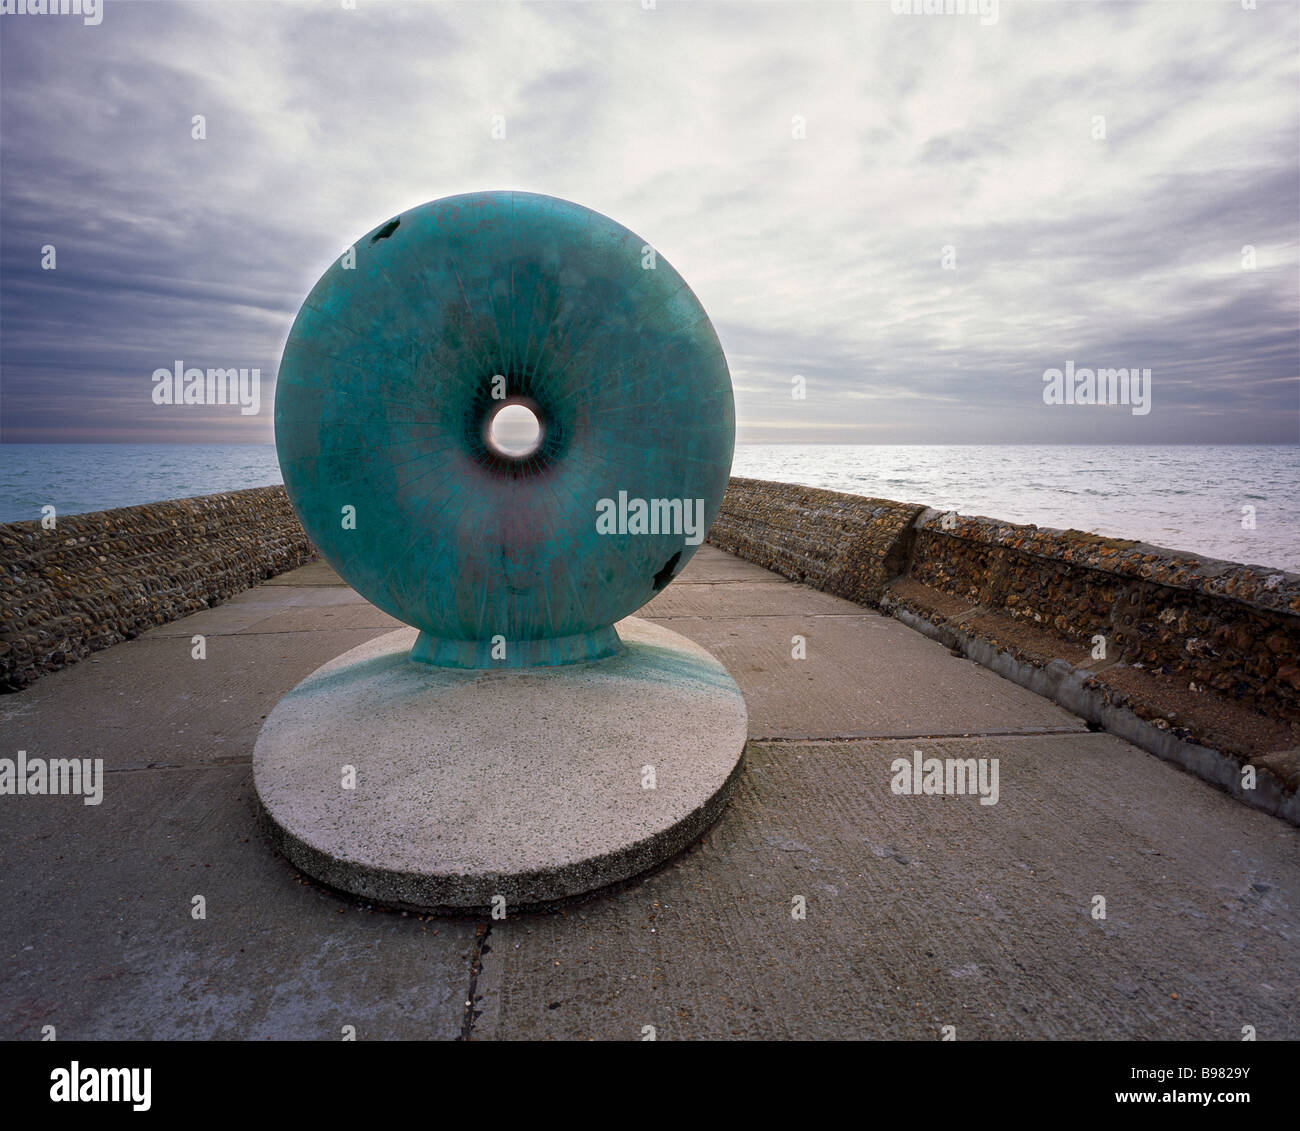 Die donut geformte Skulptur, die als Flott Brighton, Sussex, England, Großbritannien bezeichnet wird. Stockfoto